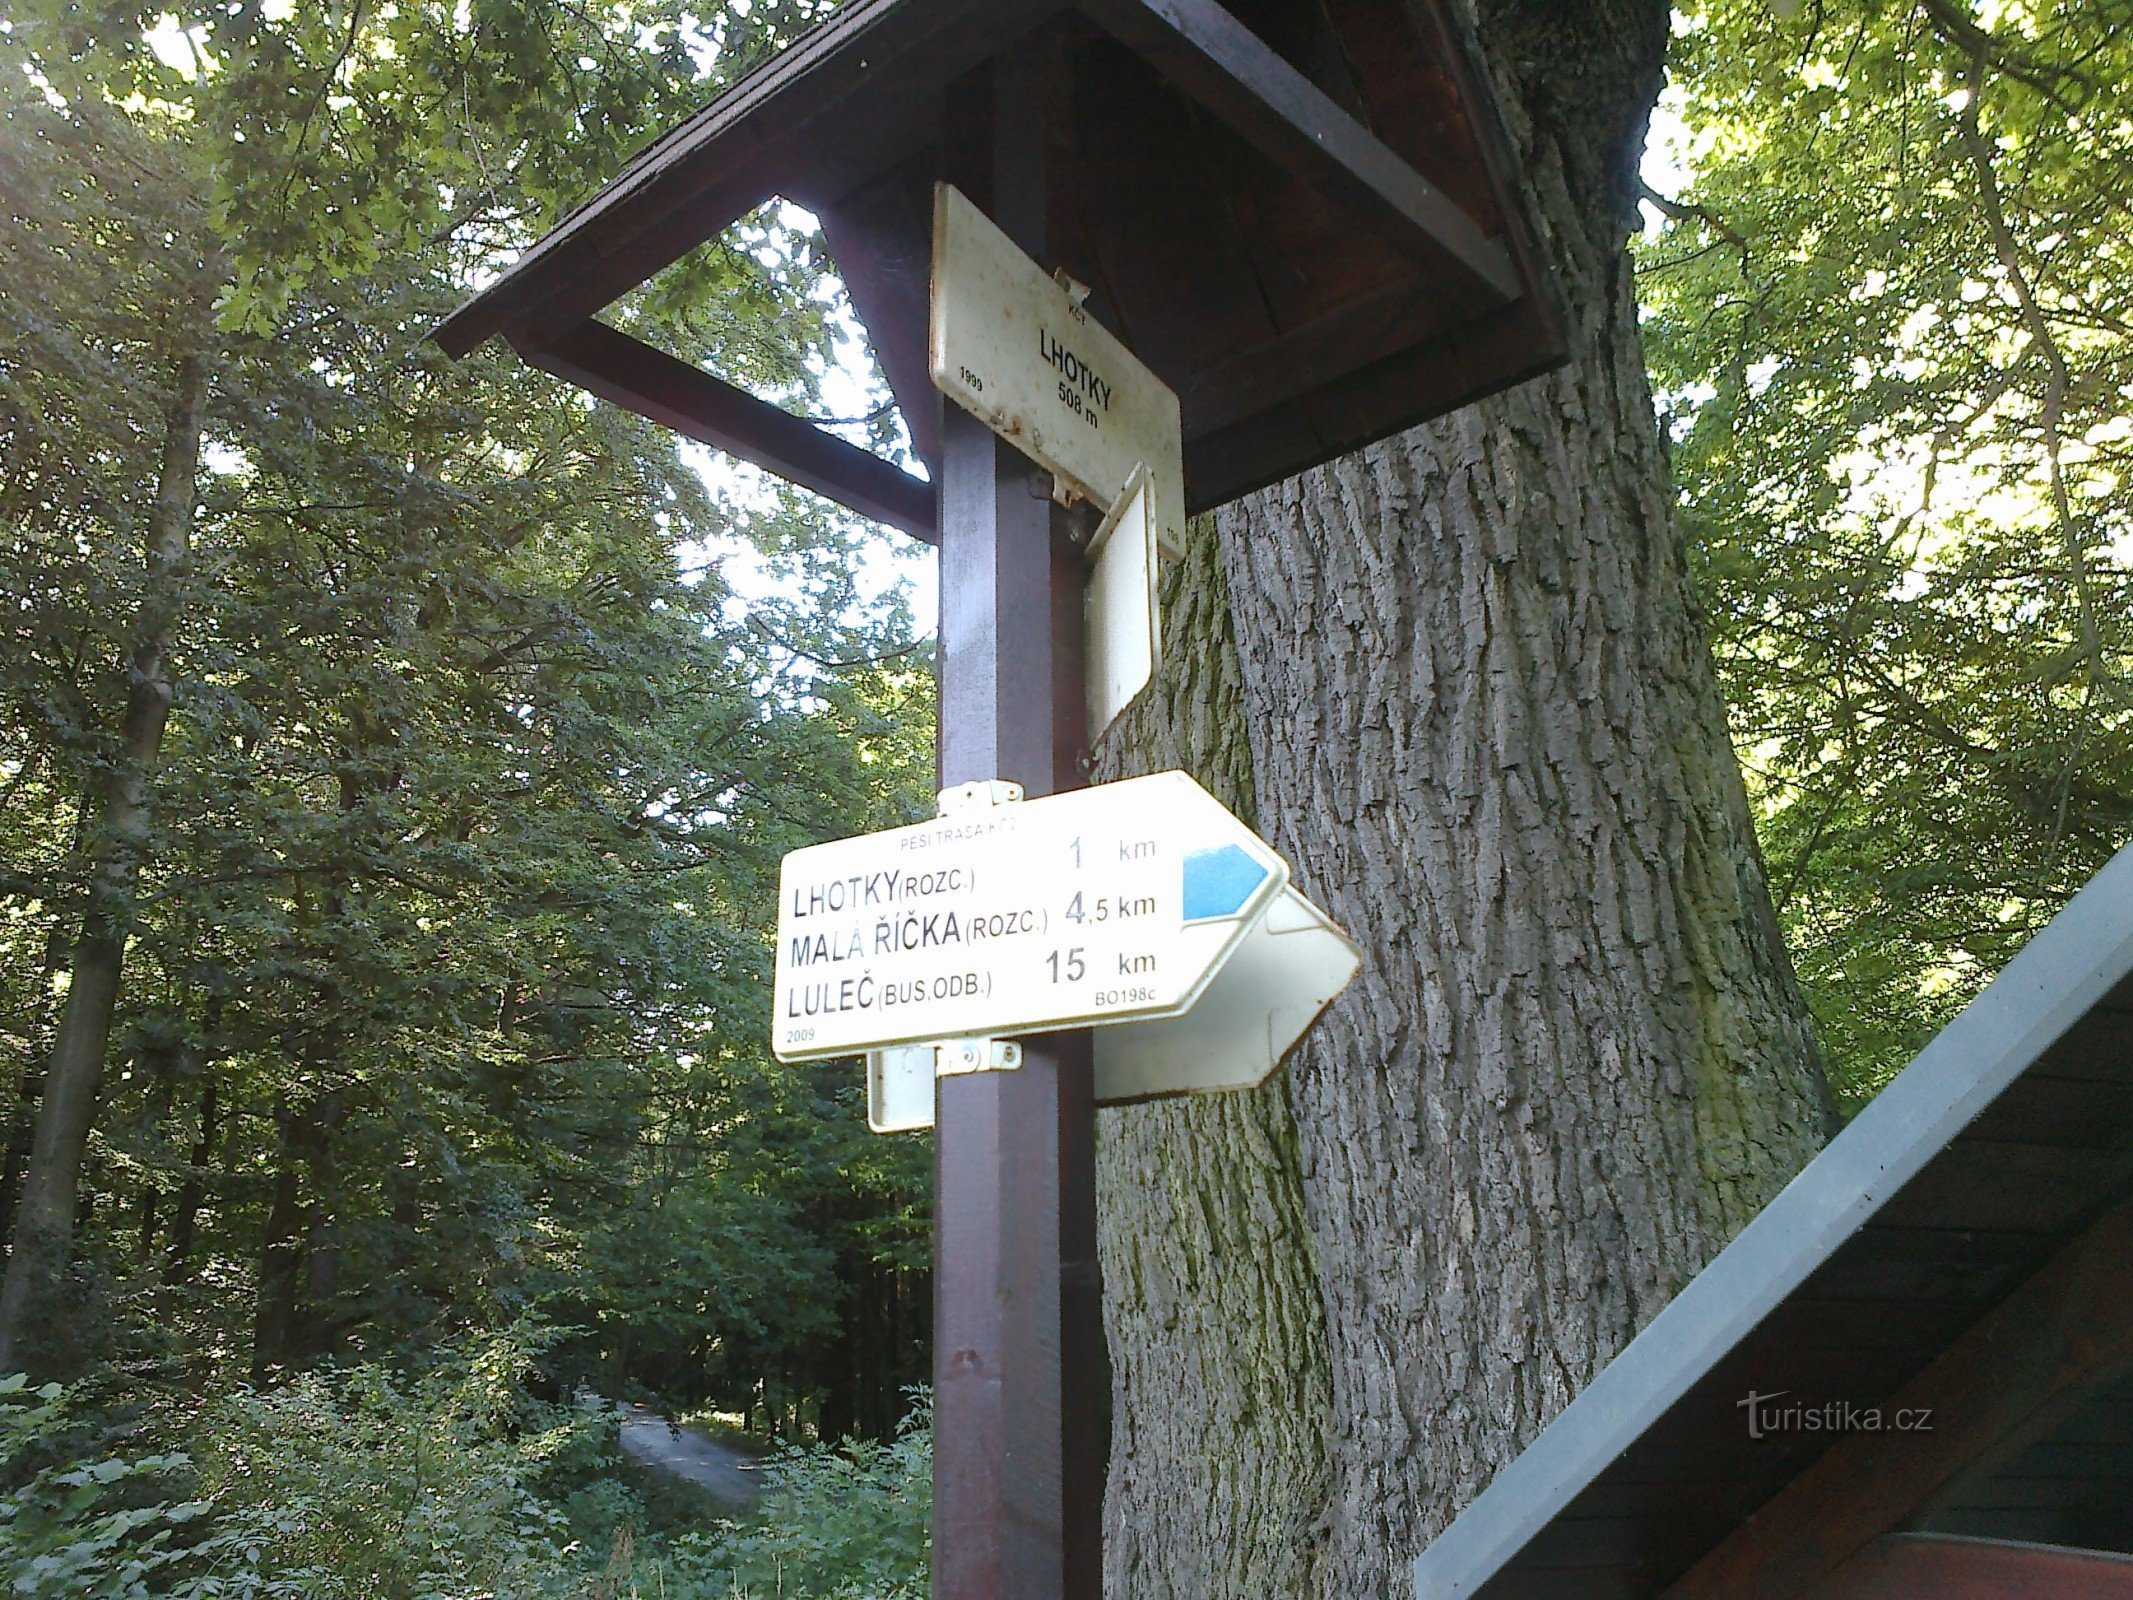 Signpost I